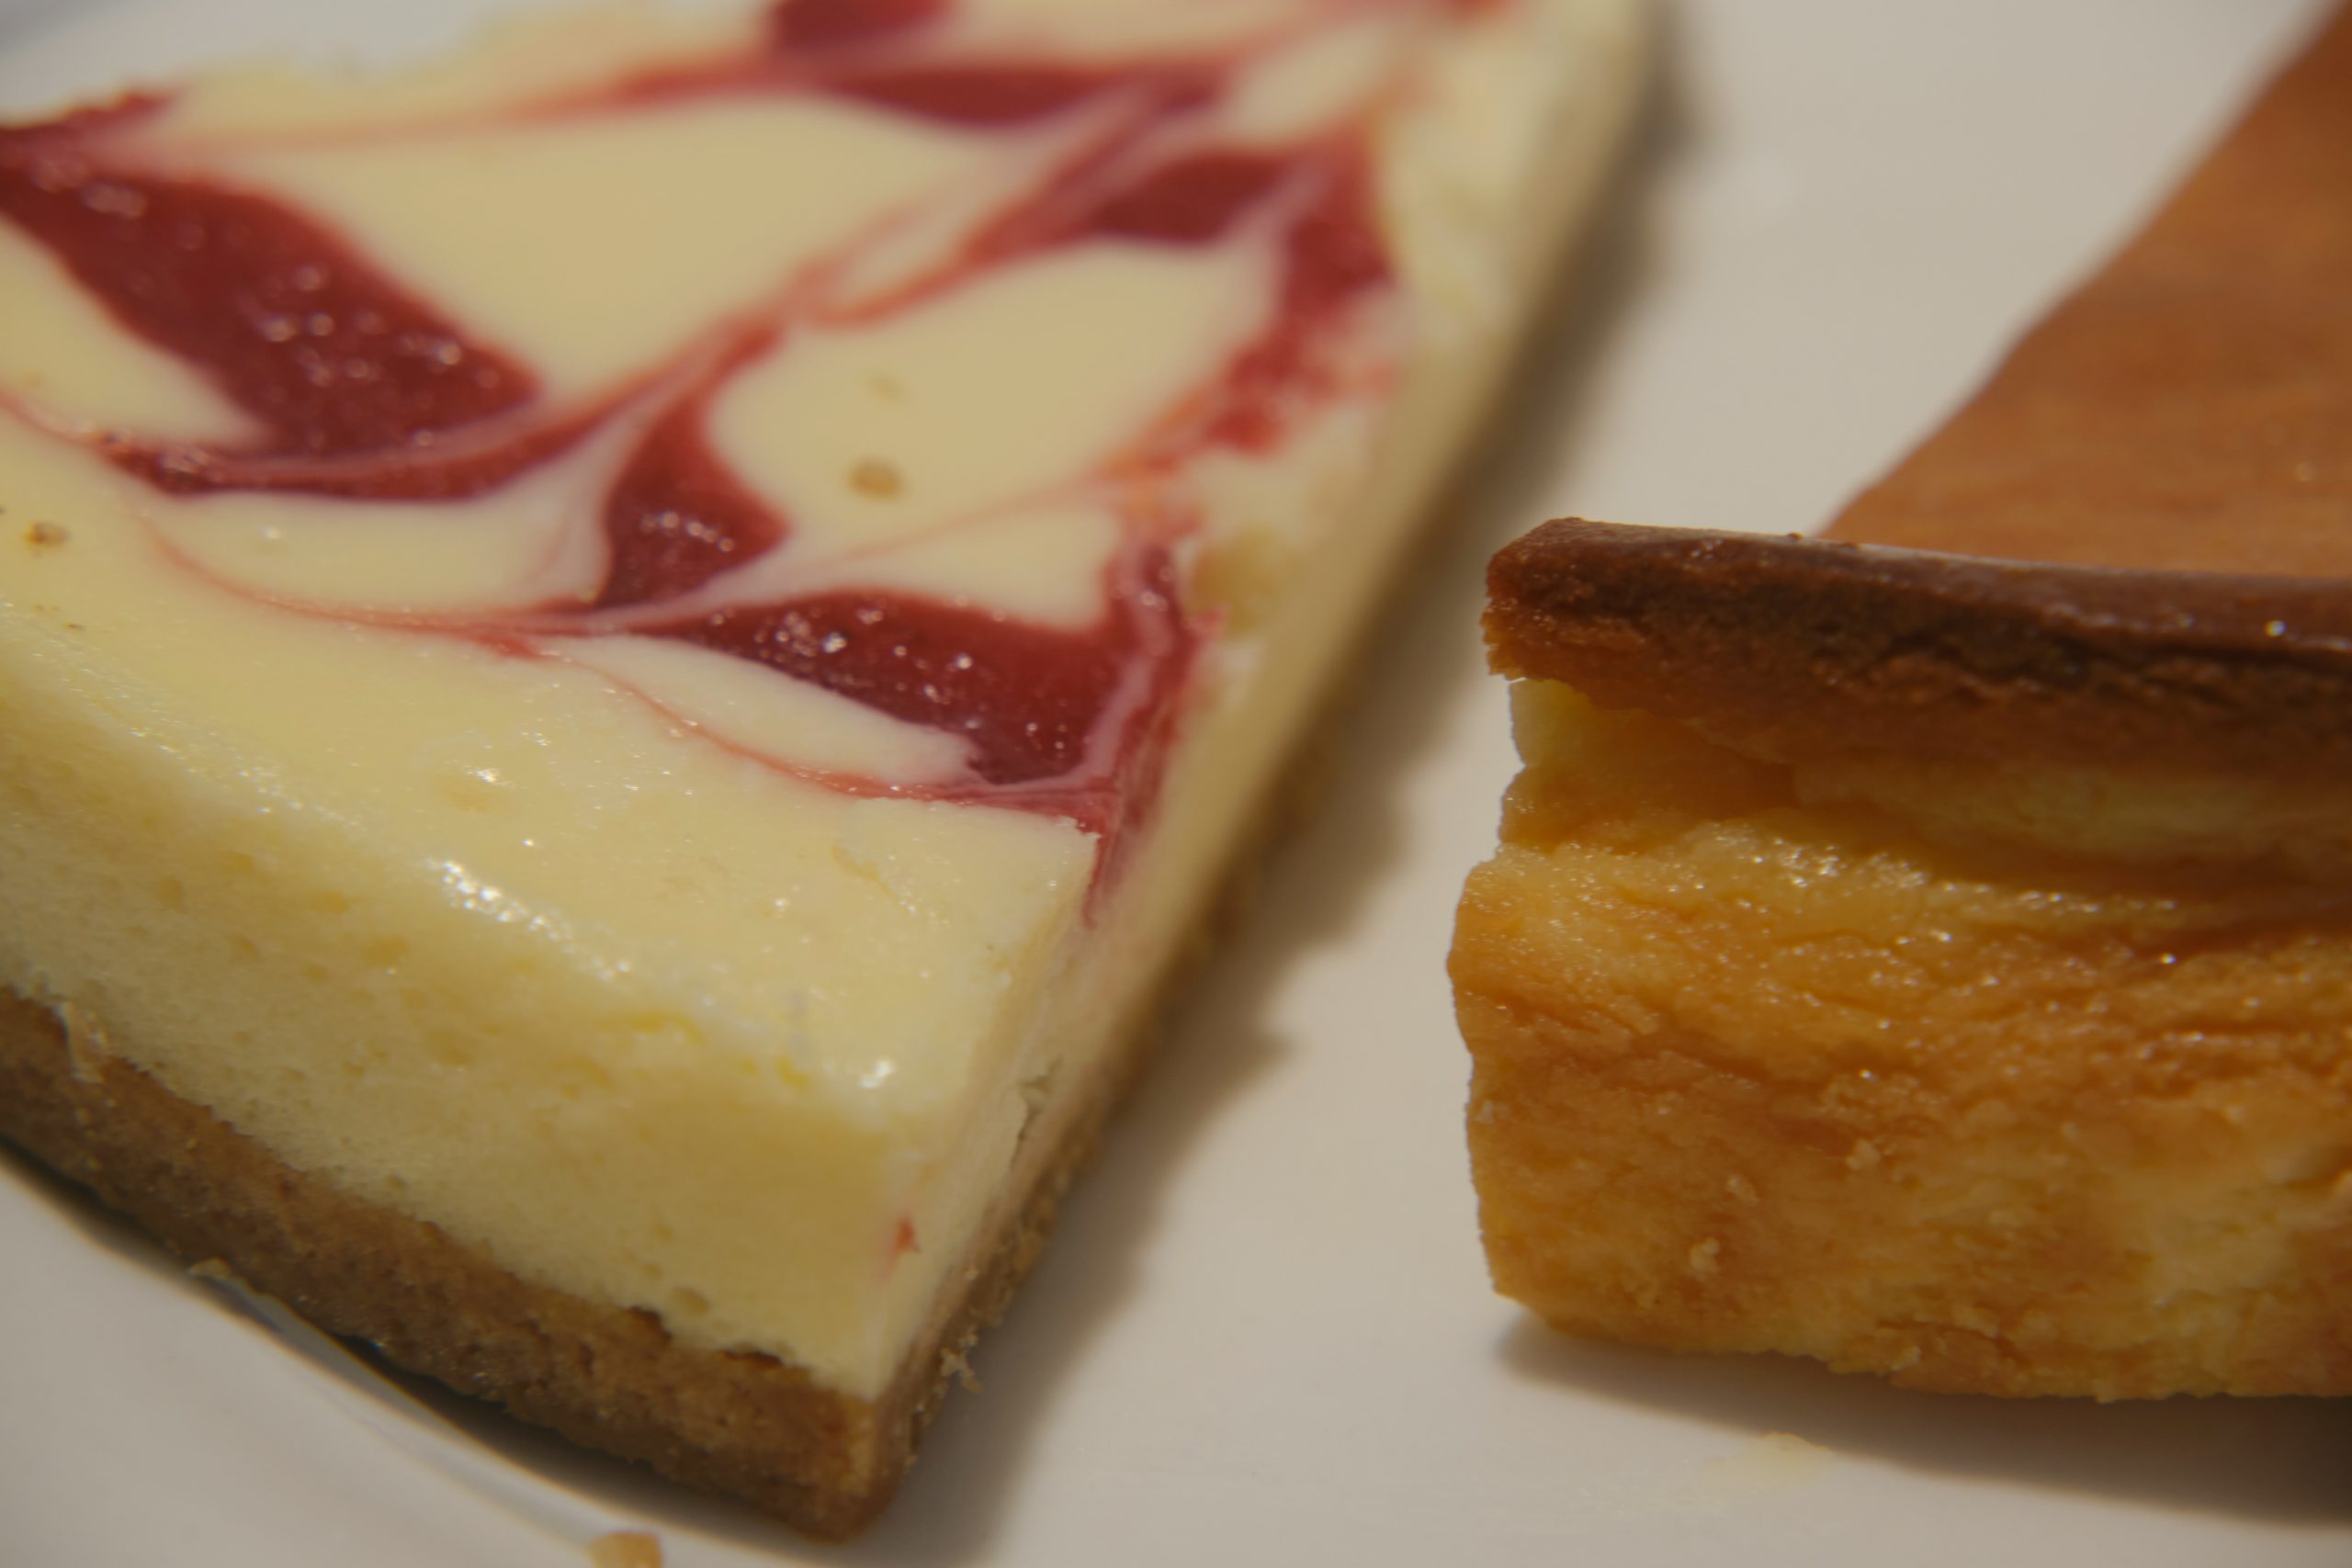 Συνταγή για νηστίσιμο cheesecake: Απολαύστε το κλασικό γλυκό χωρίς γαλακτοκομικά